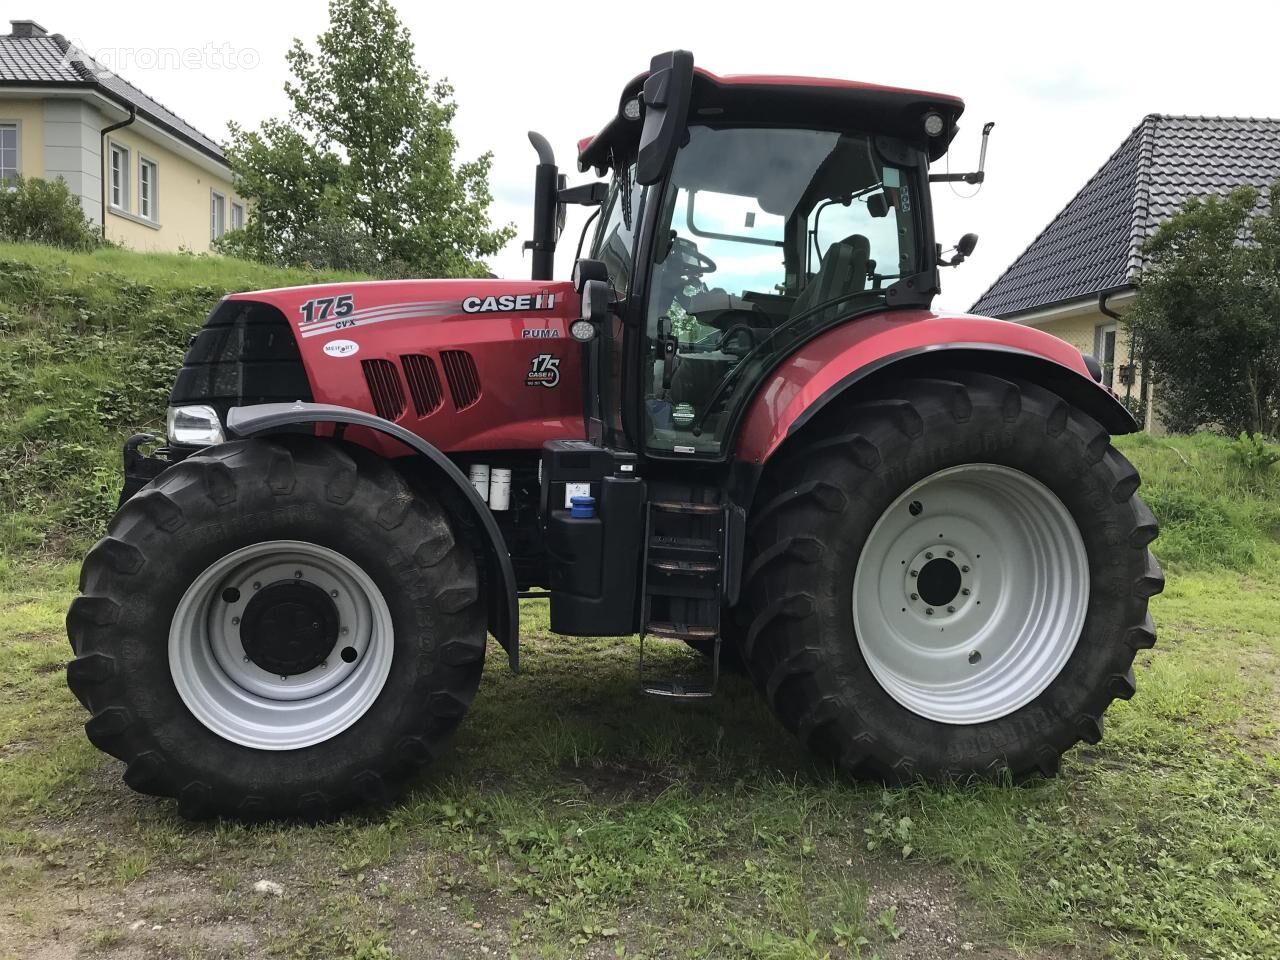 Puma CVX 175 wheel tractor